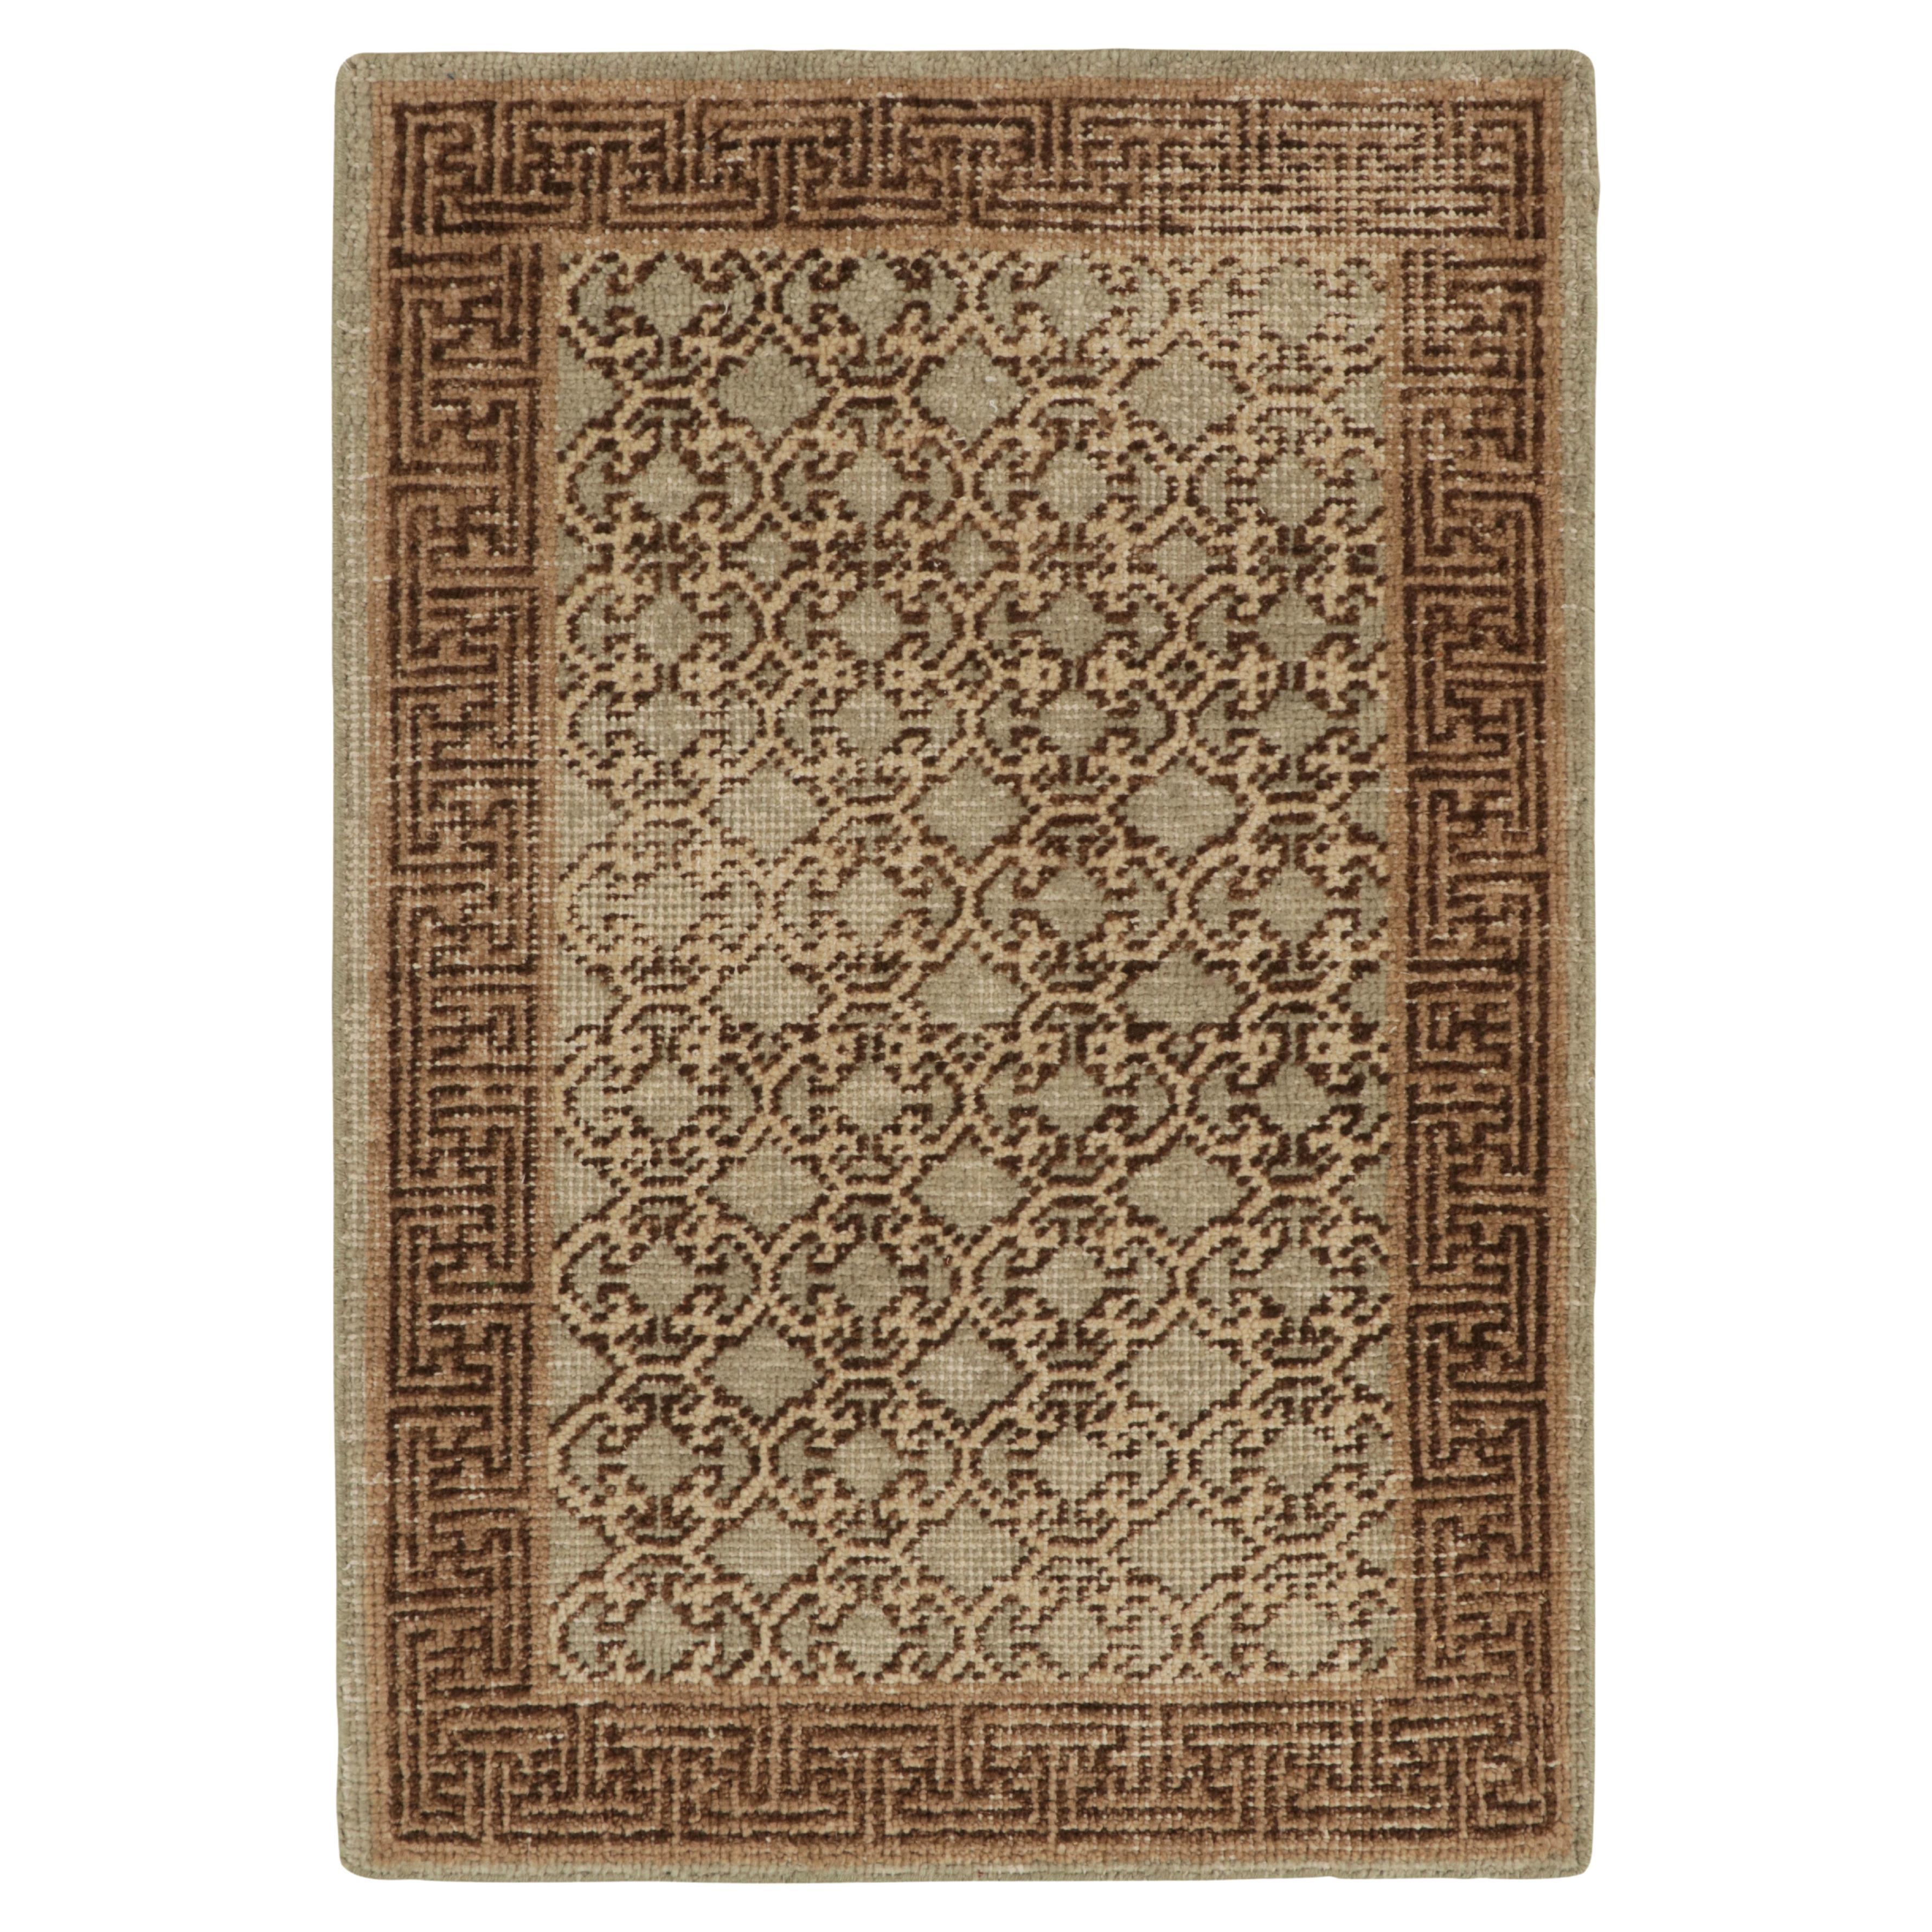 Rug & Kilim’s Distressed Khotan Style Rug in Gray, Beige-Brown Trellis Pattern